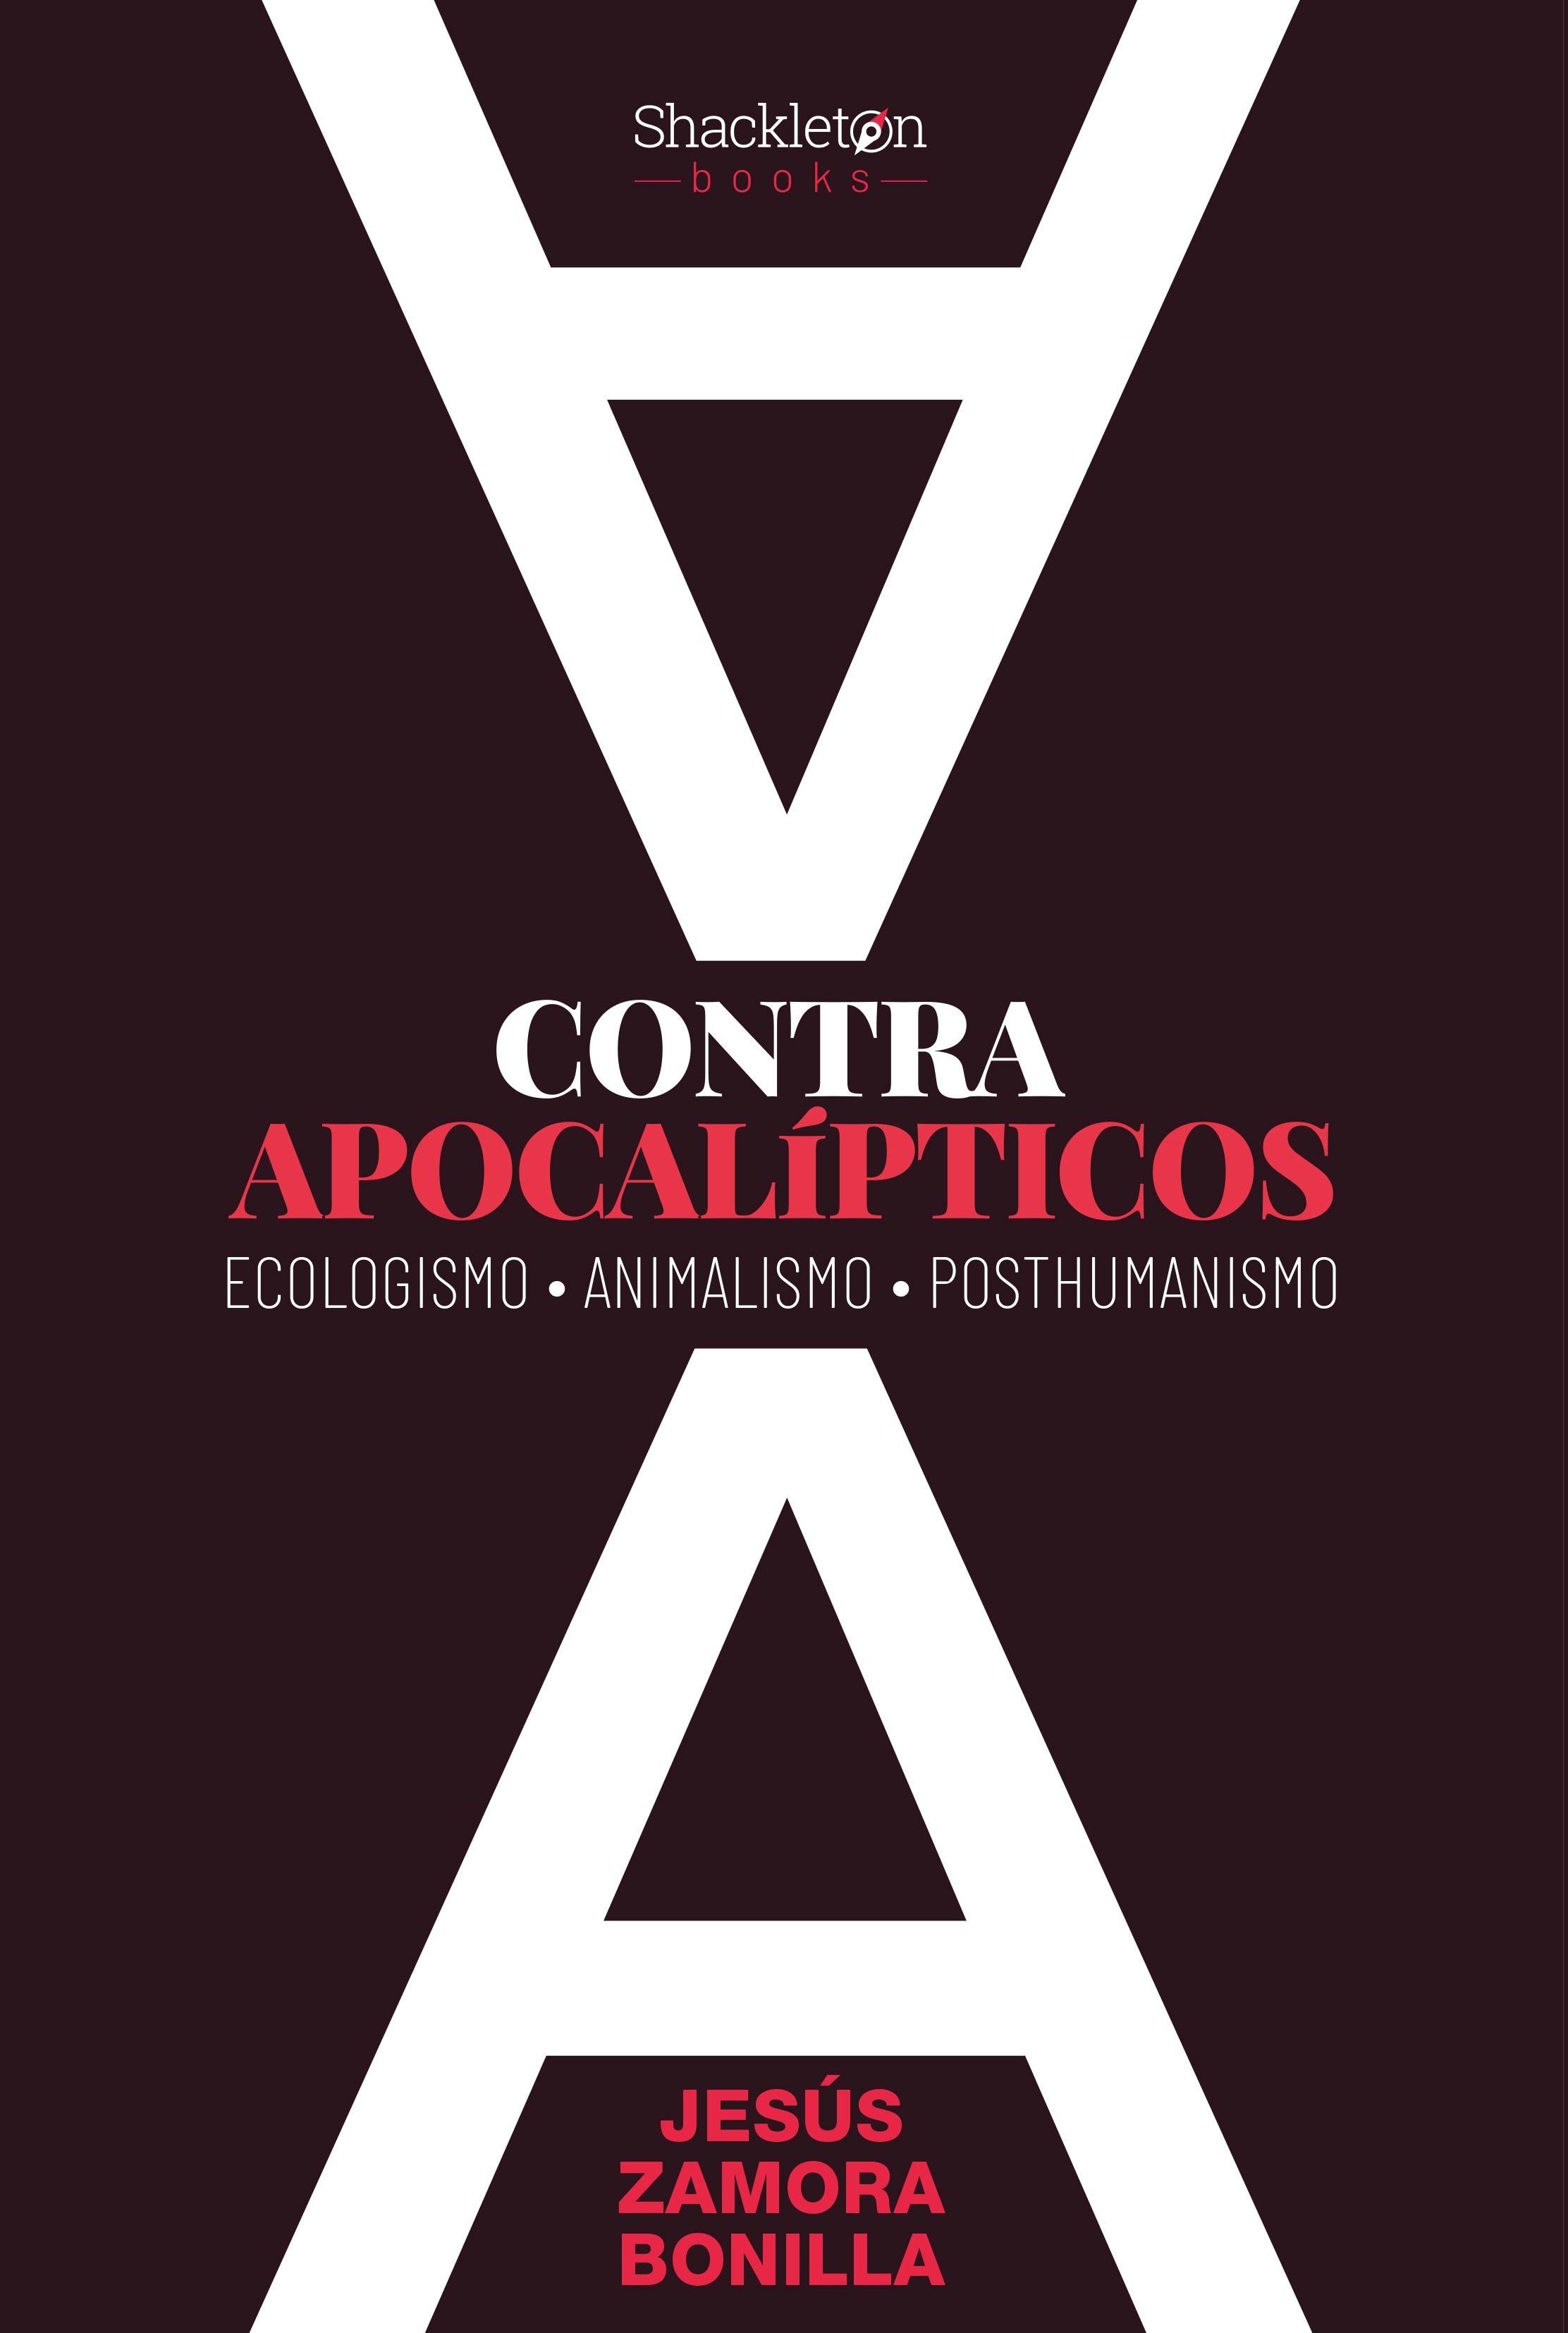 Contra apocalípticos "Ecologismo, Animalismo, Posthumanismo"